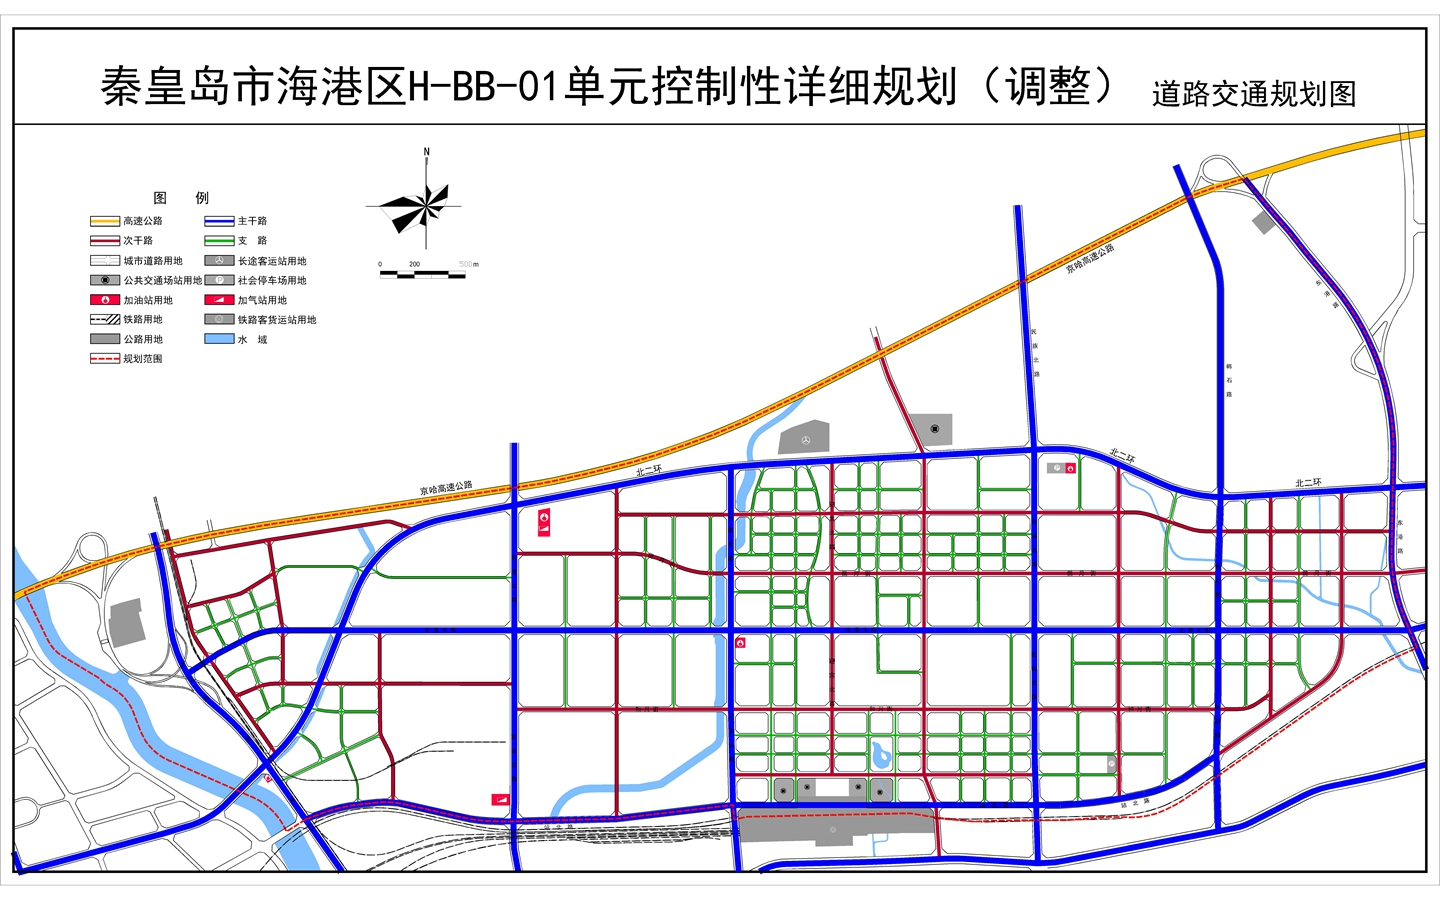 秦皇岛北港镇2020规划图片